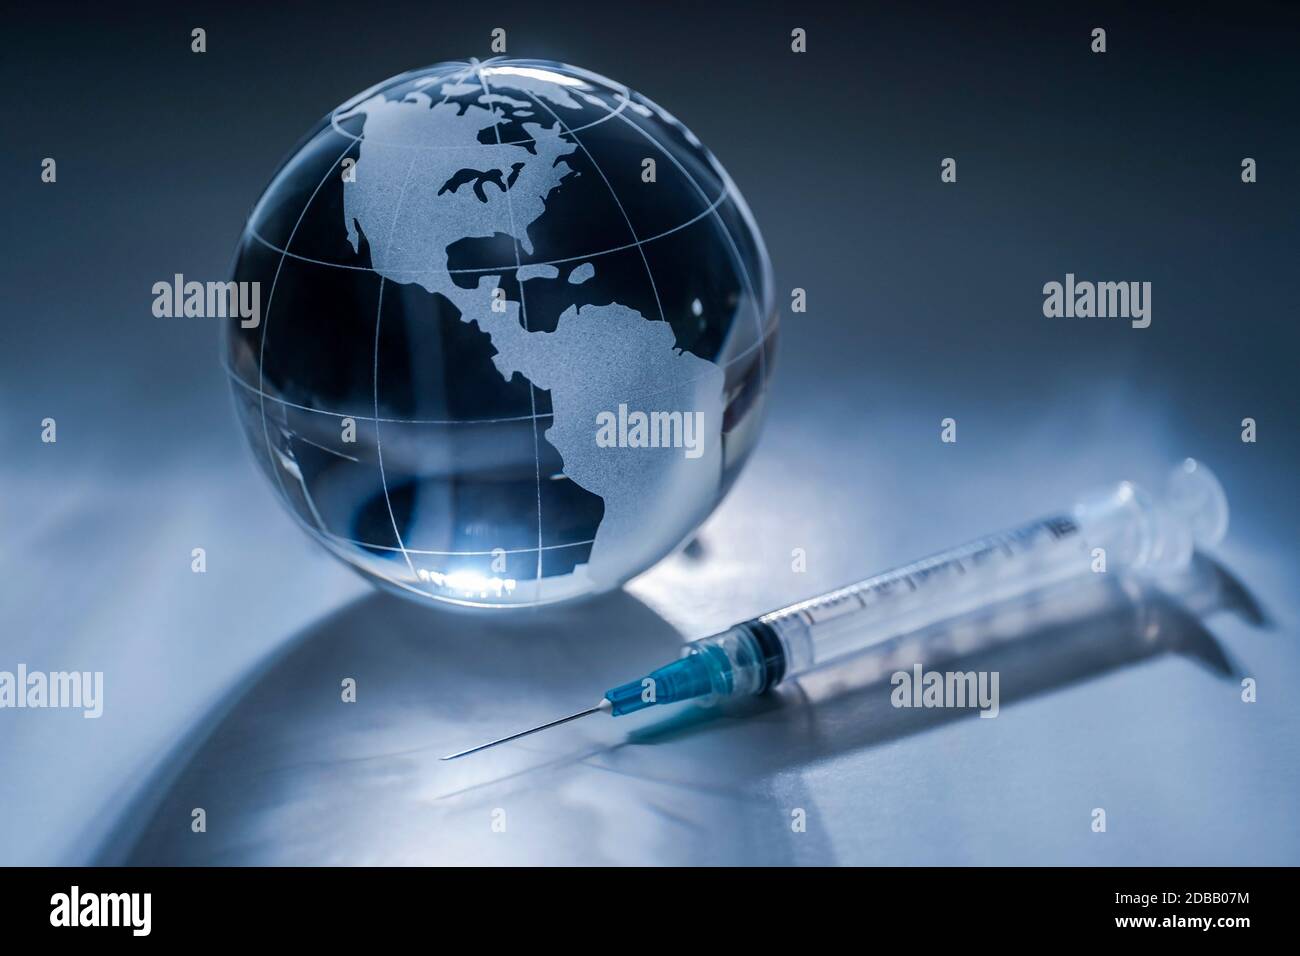 Glass globe and syringe on gray background Stock Photo